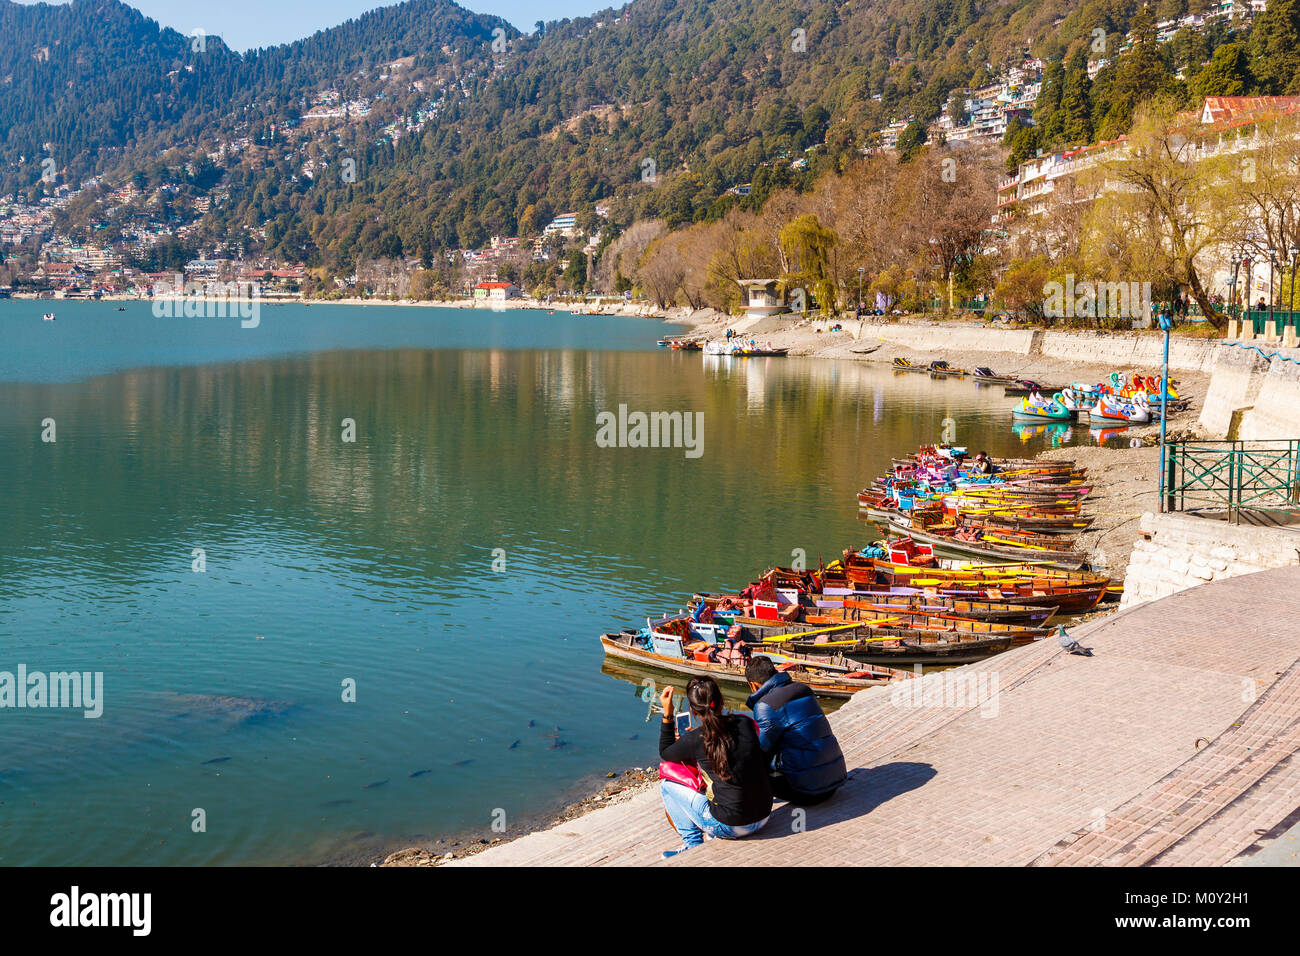 Les loisirs : l'aviron en bois colorés traditionnels bateaux amarrés sur la rive, Lac de Nainital, Ayerpatta, Nainital, Uttarakhand, Inde du nord Banque D'Images